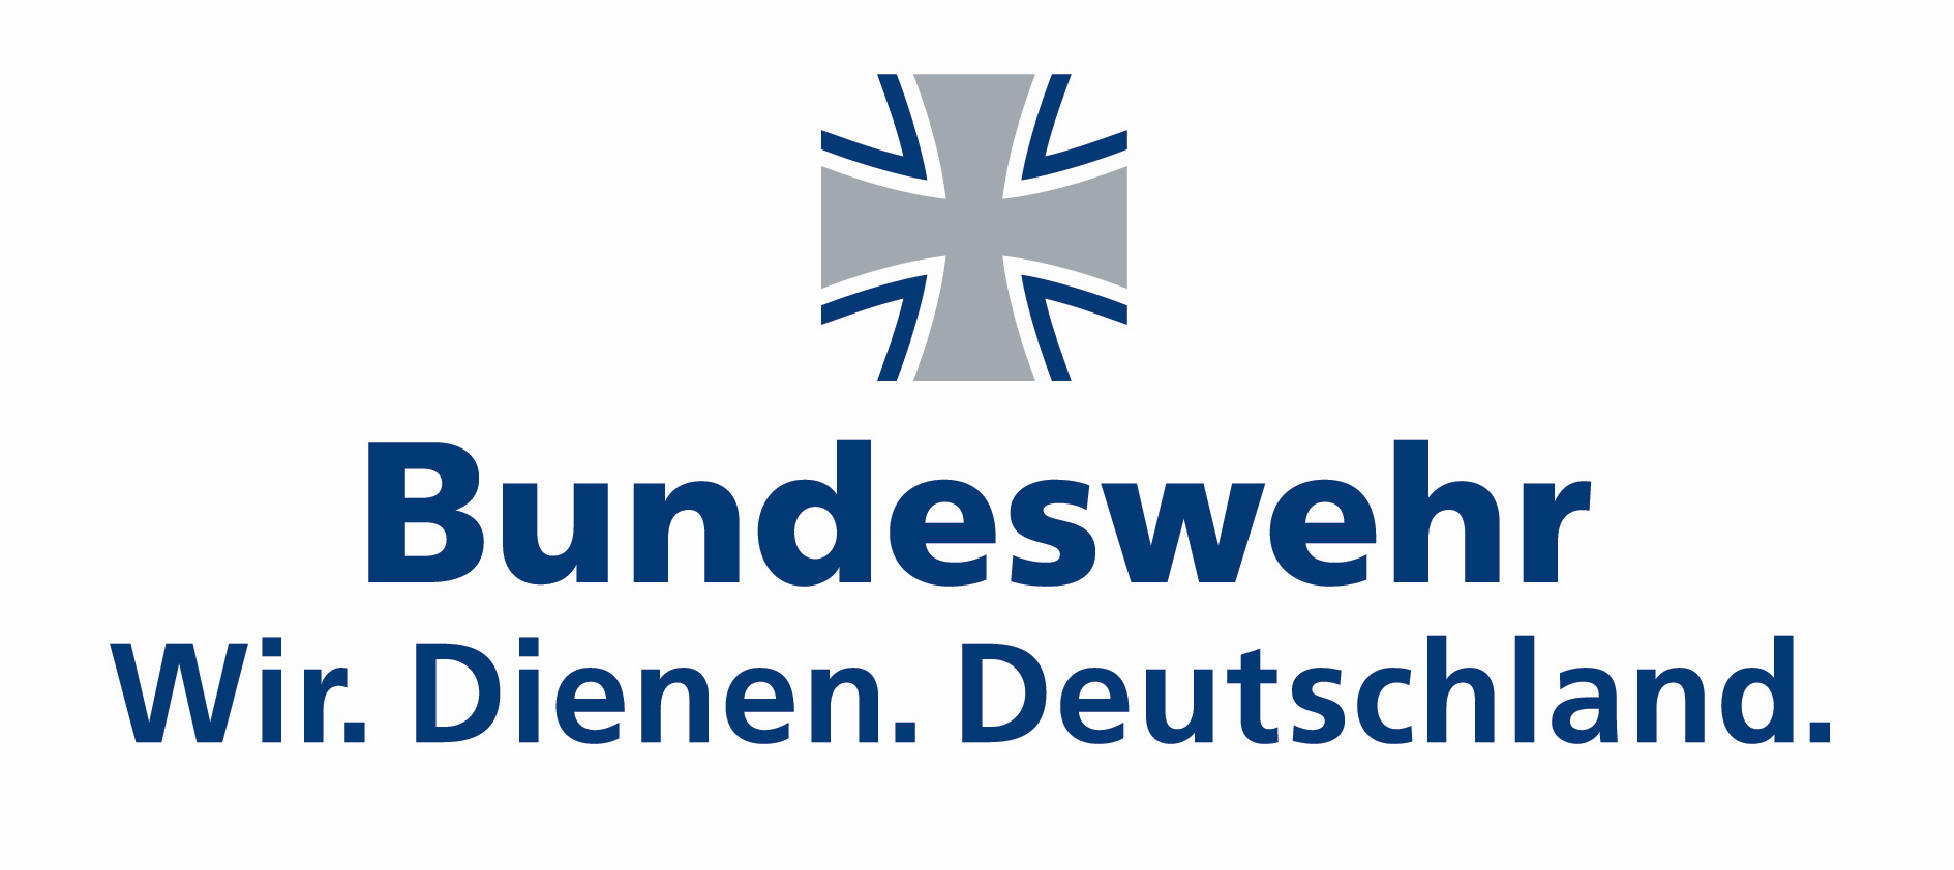 http://www.dvs-interskideutschland.de/Logo%20Bundeswehr.jpg